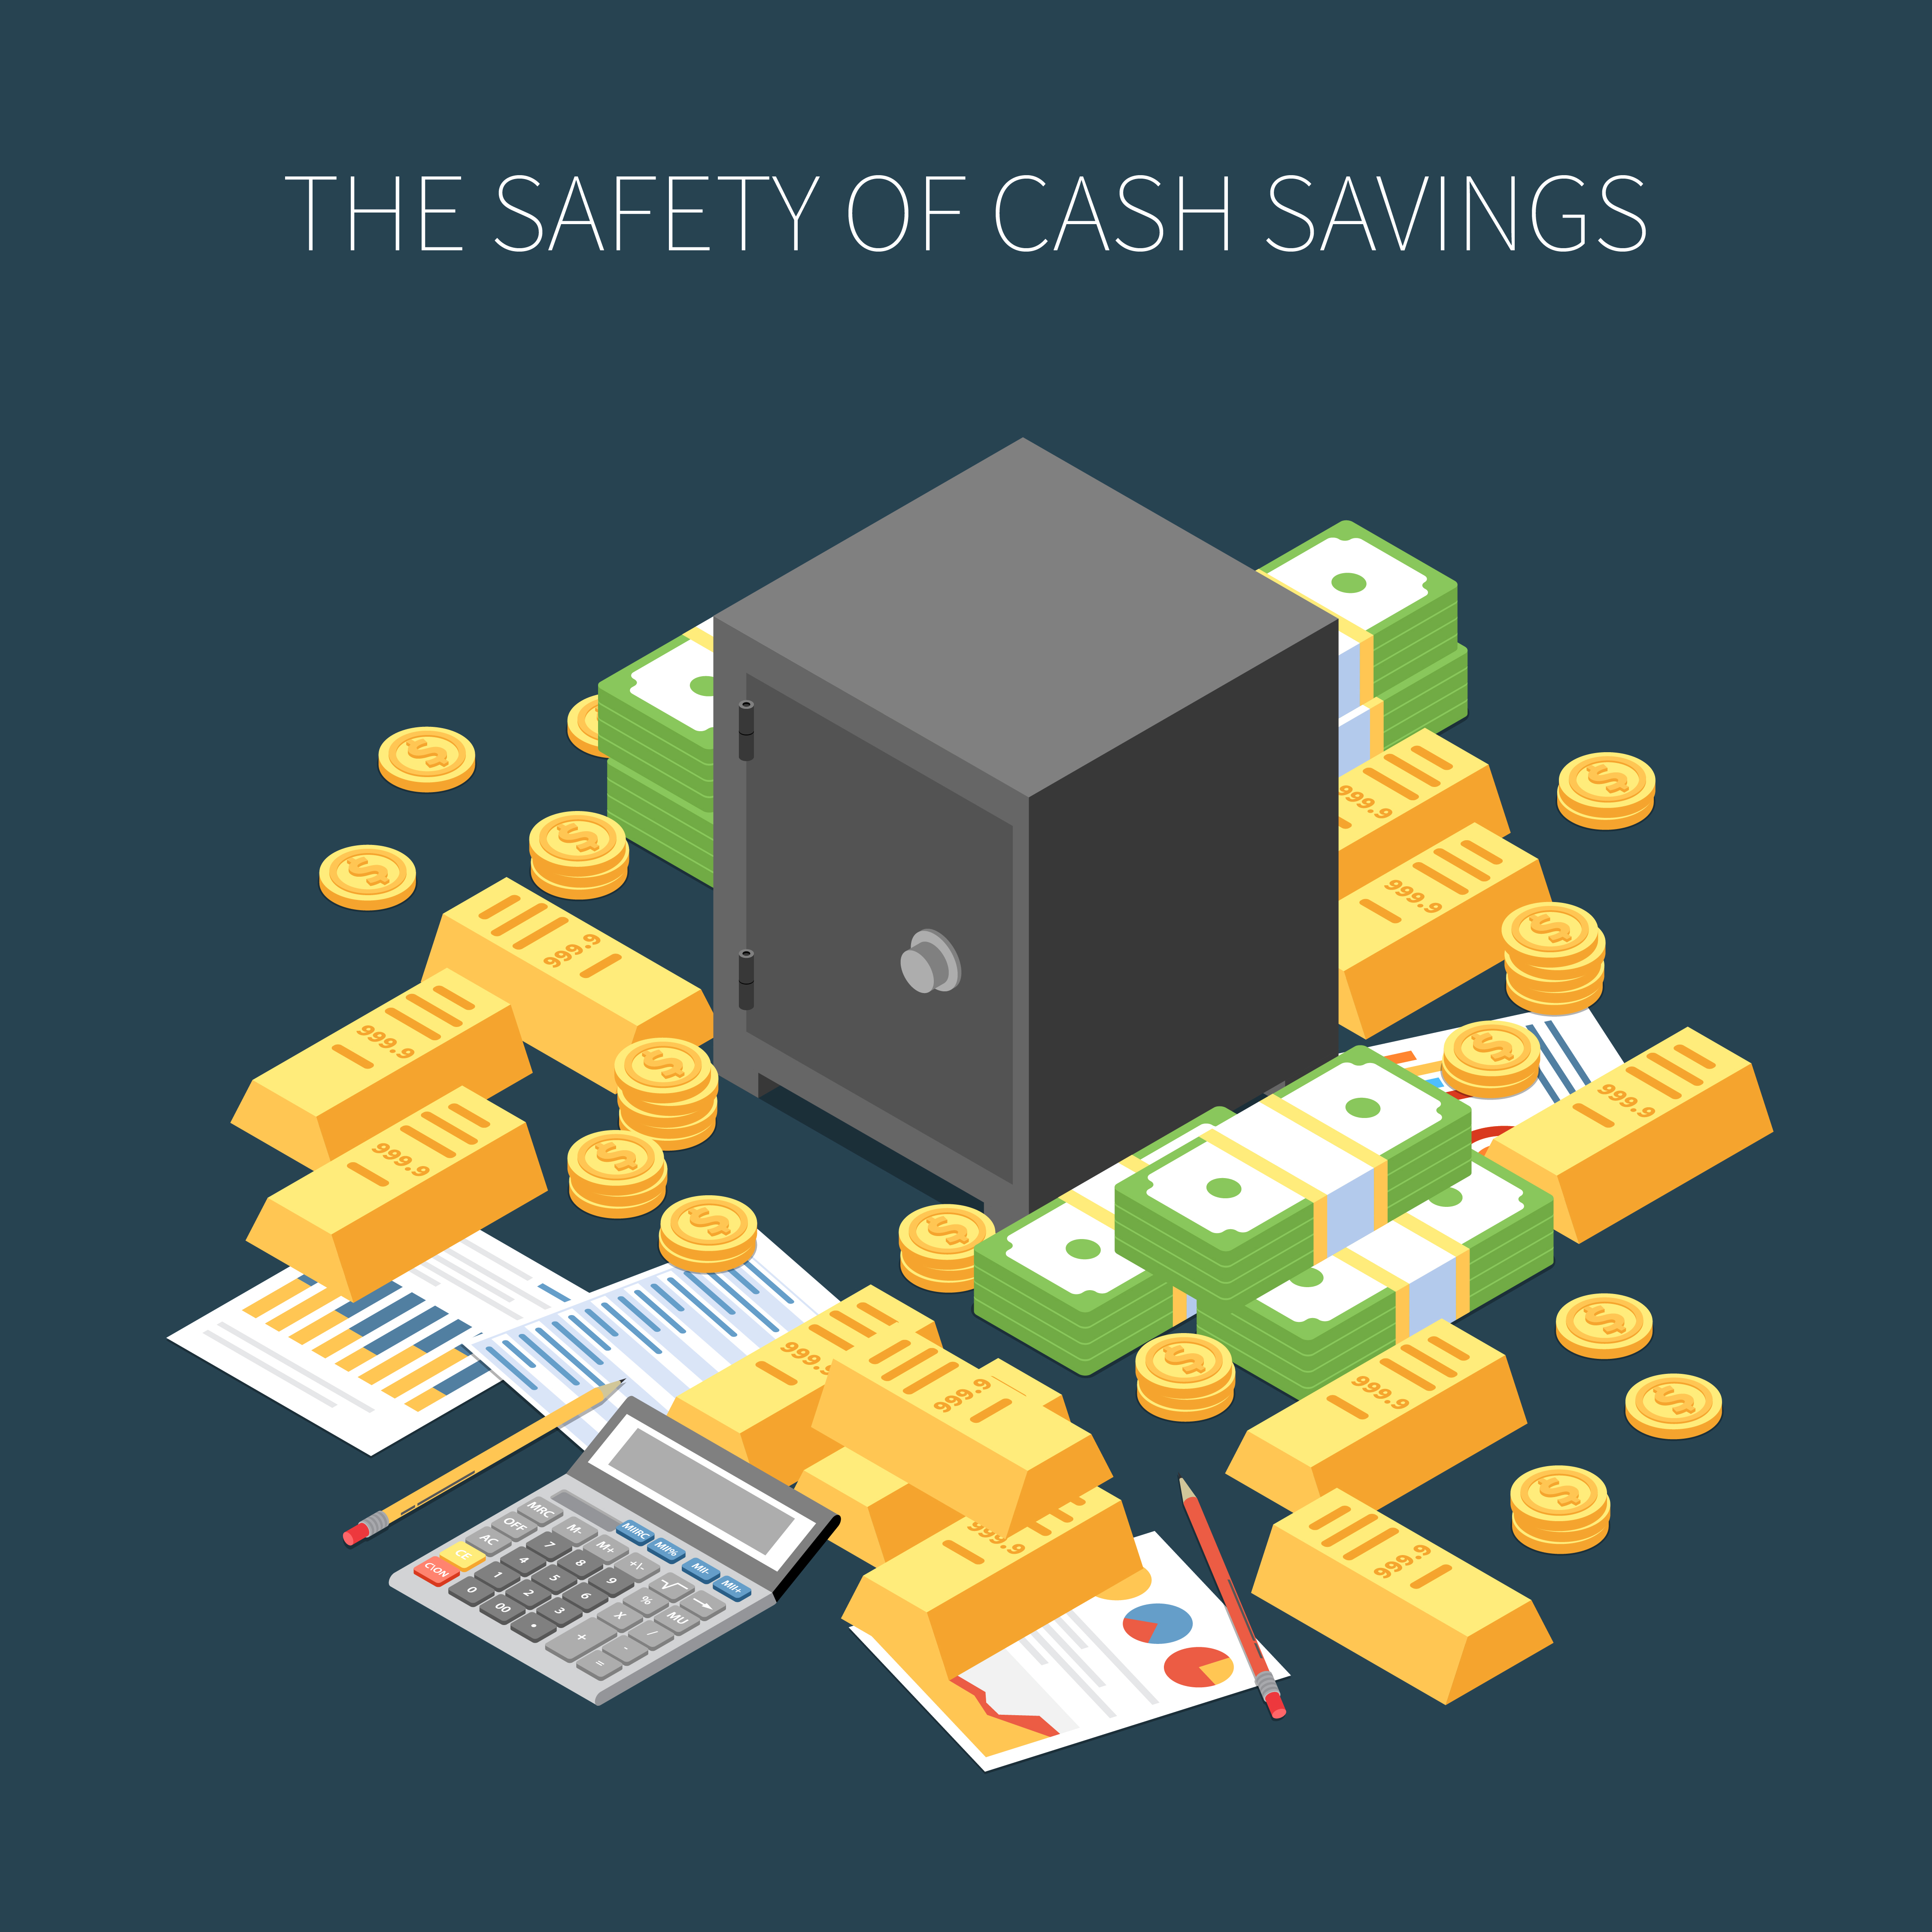 Home Safes - Safe with Cash & Gold